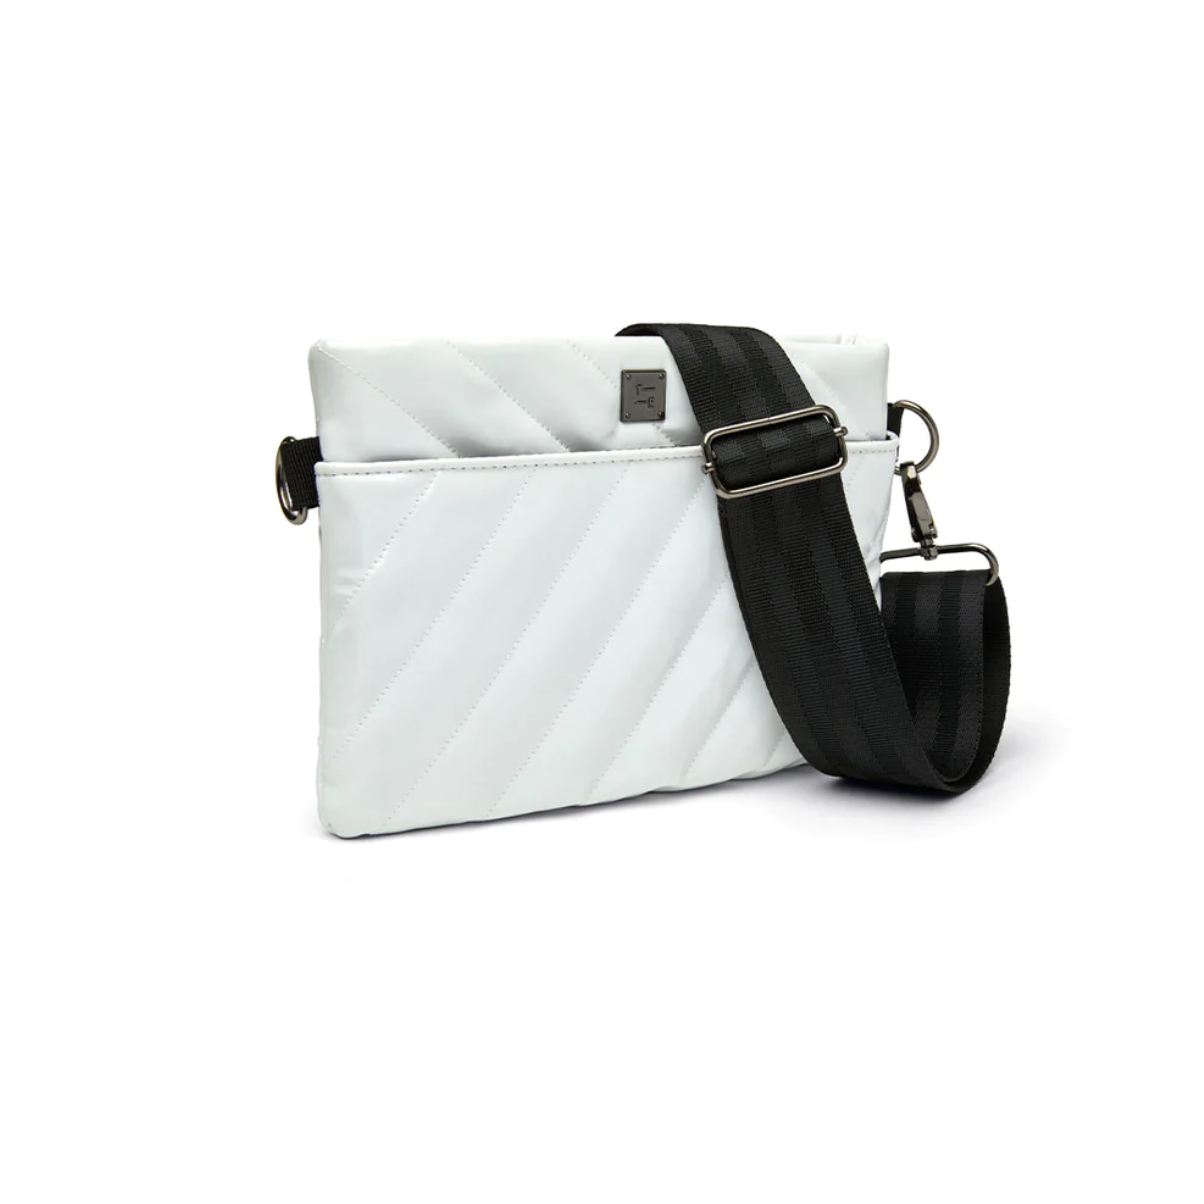 Think Royln - Bum Bag 2.0 Handbag